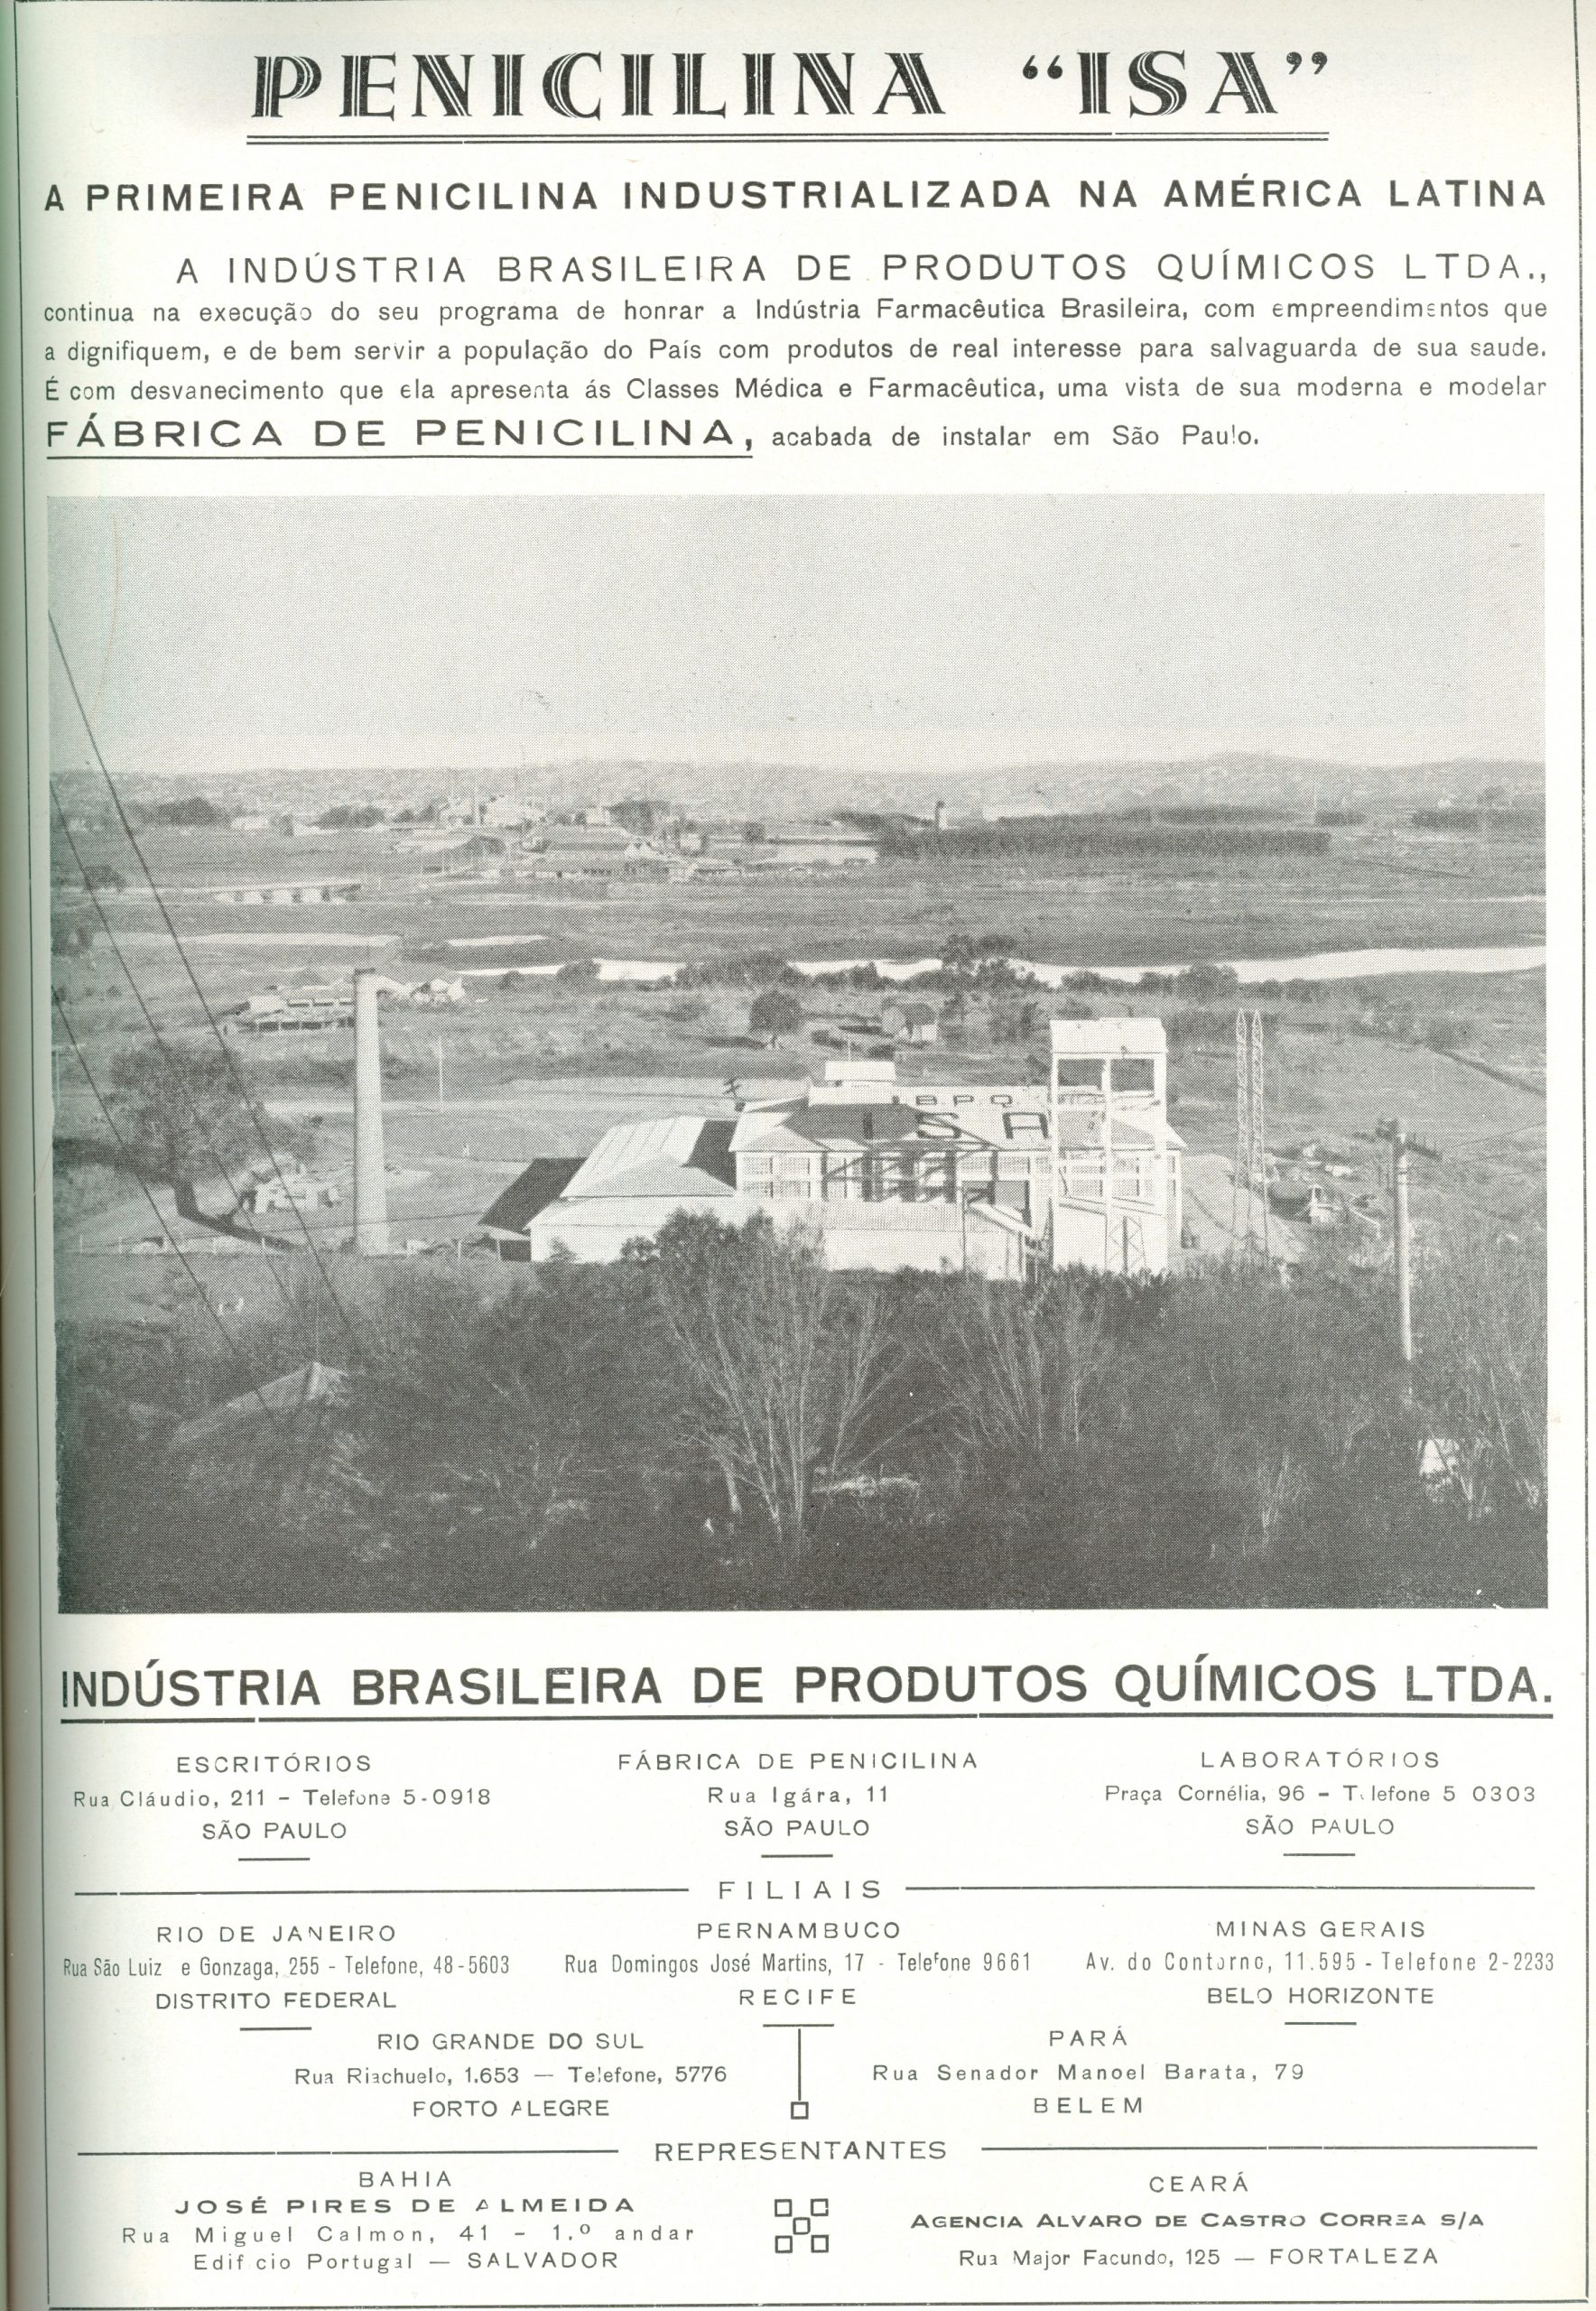 Digitalização da página de um jornal com um anúncio de 1947 da Indústria Brasileira de Produtos Químicos. Na manchete, lê-se "Penicilina Isa. A primeira penicilina industrializada da América Latina". No centro da página, há uma foto Flat Lay da fábrica de penicilina em São Paulo.